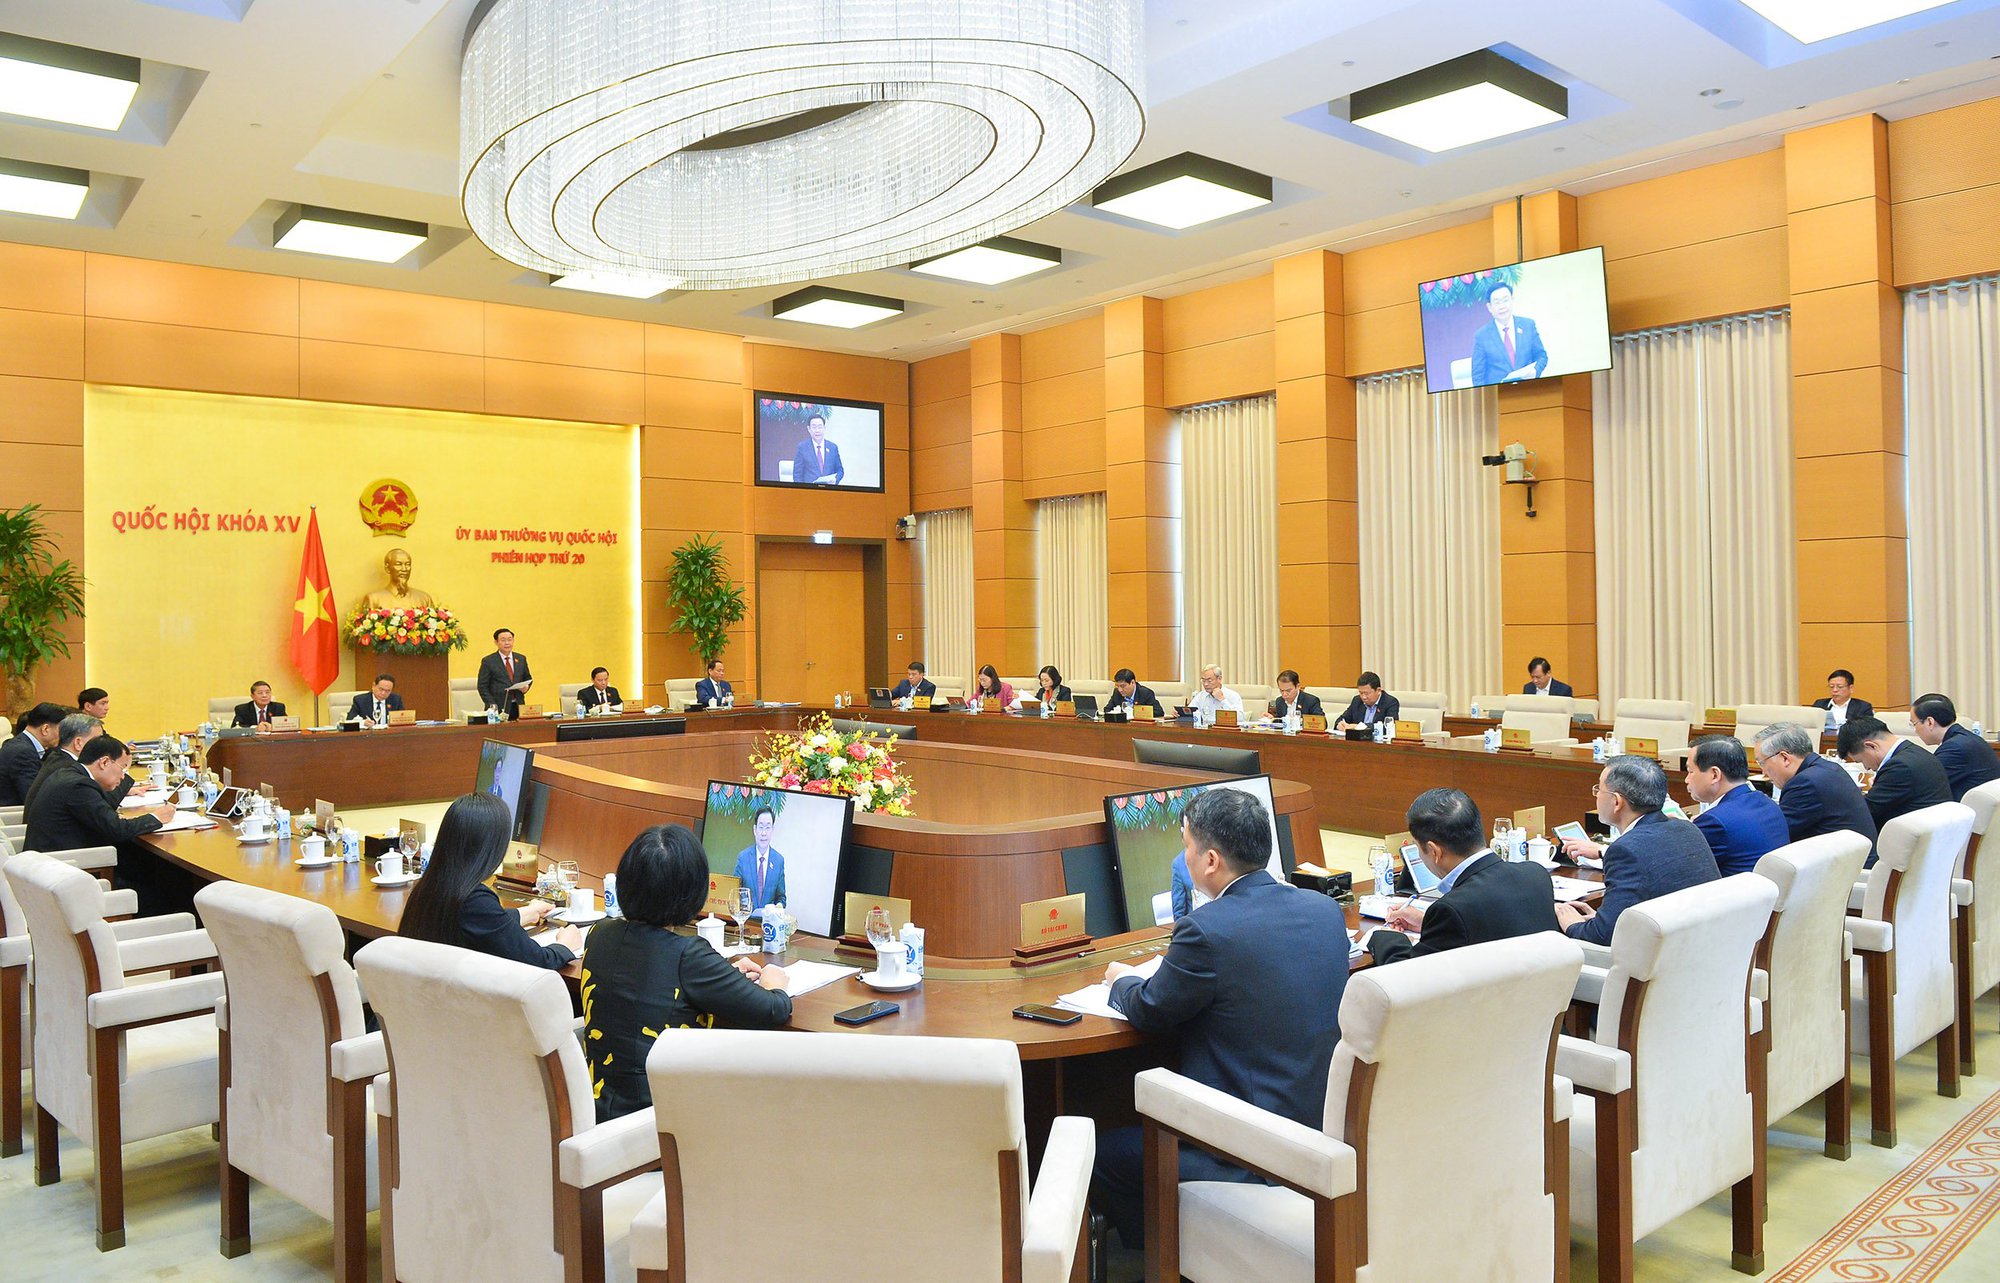 Tiêu chí lựa chọn vấn đề được giải trình tại phiên họp Ủy ban của Quốc hội